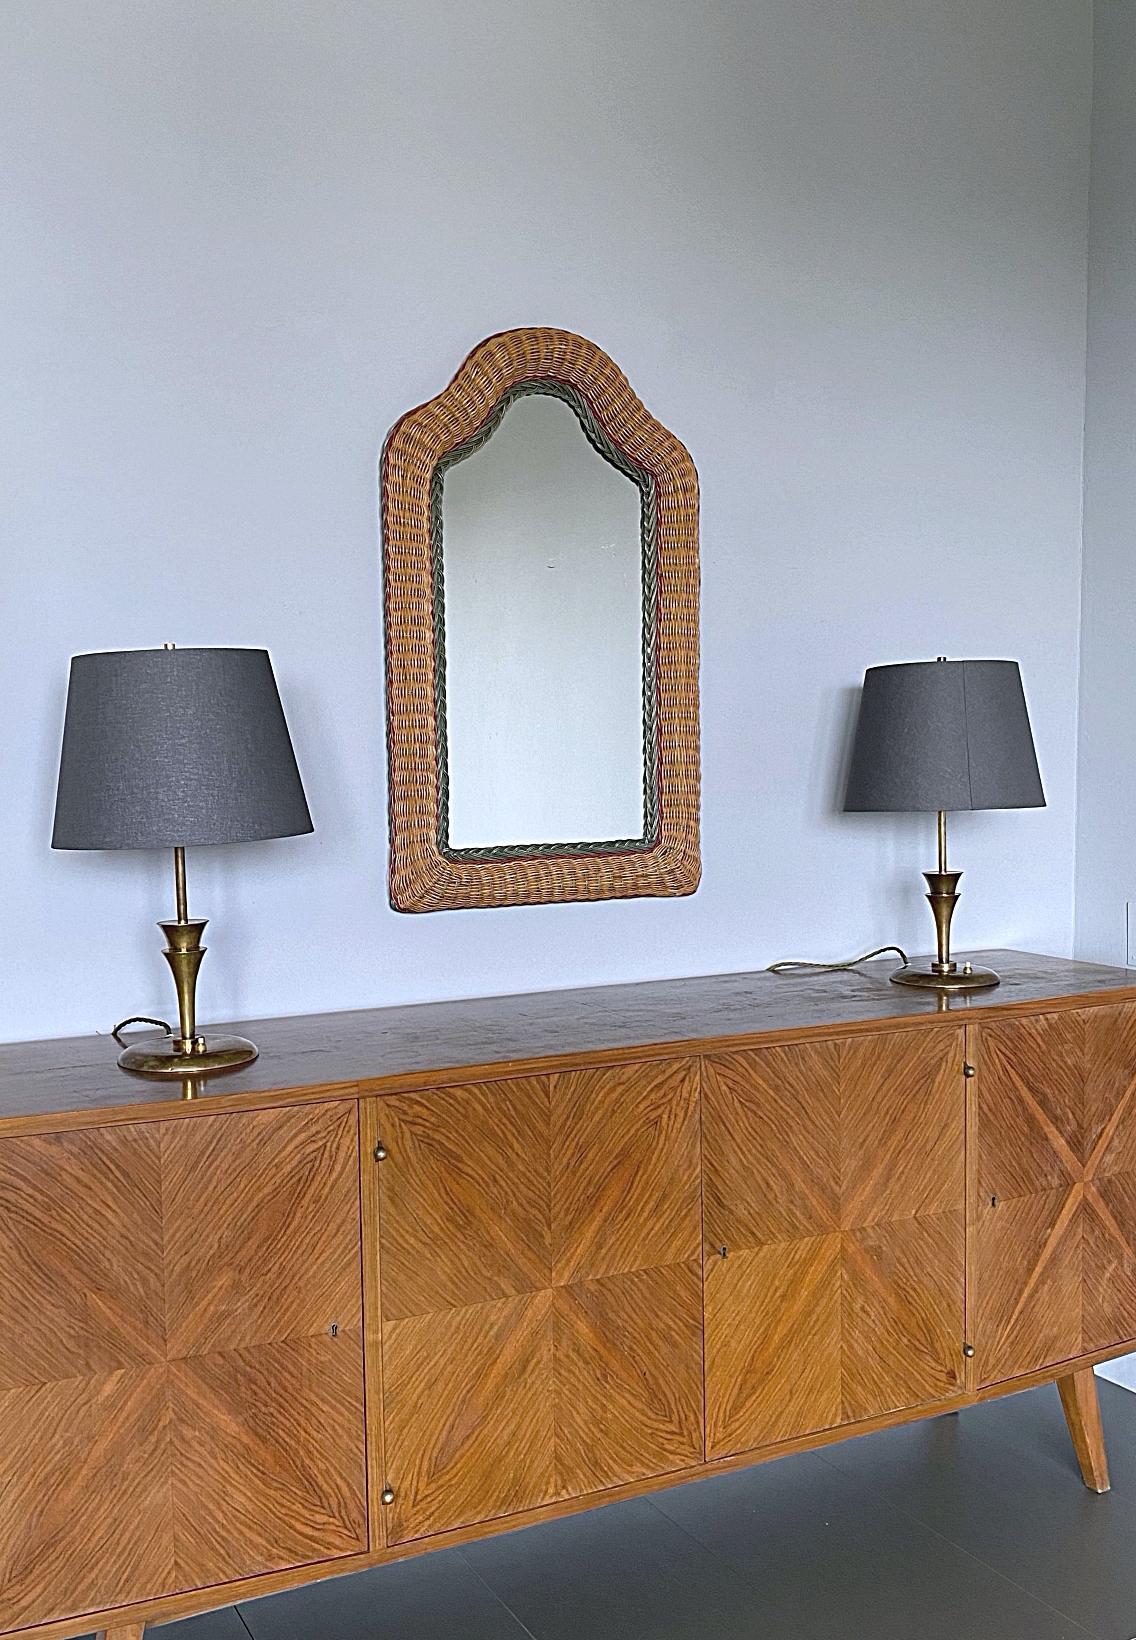 Schöner gewölbter Spiegel mit dreifarbigem handgefertigtem Rattanrahmen, Mitte der 1960er Jahre, Frankreich. 
Der Spiegel ist in einem sehr guten Zustand, ohne jegliche Flecken oder Beschädigungen.

 Wir haben dieses einzigartige Objekt auf einer